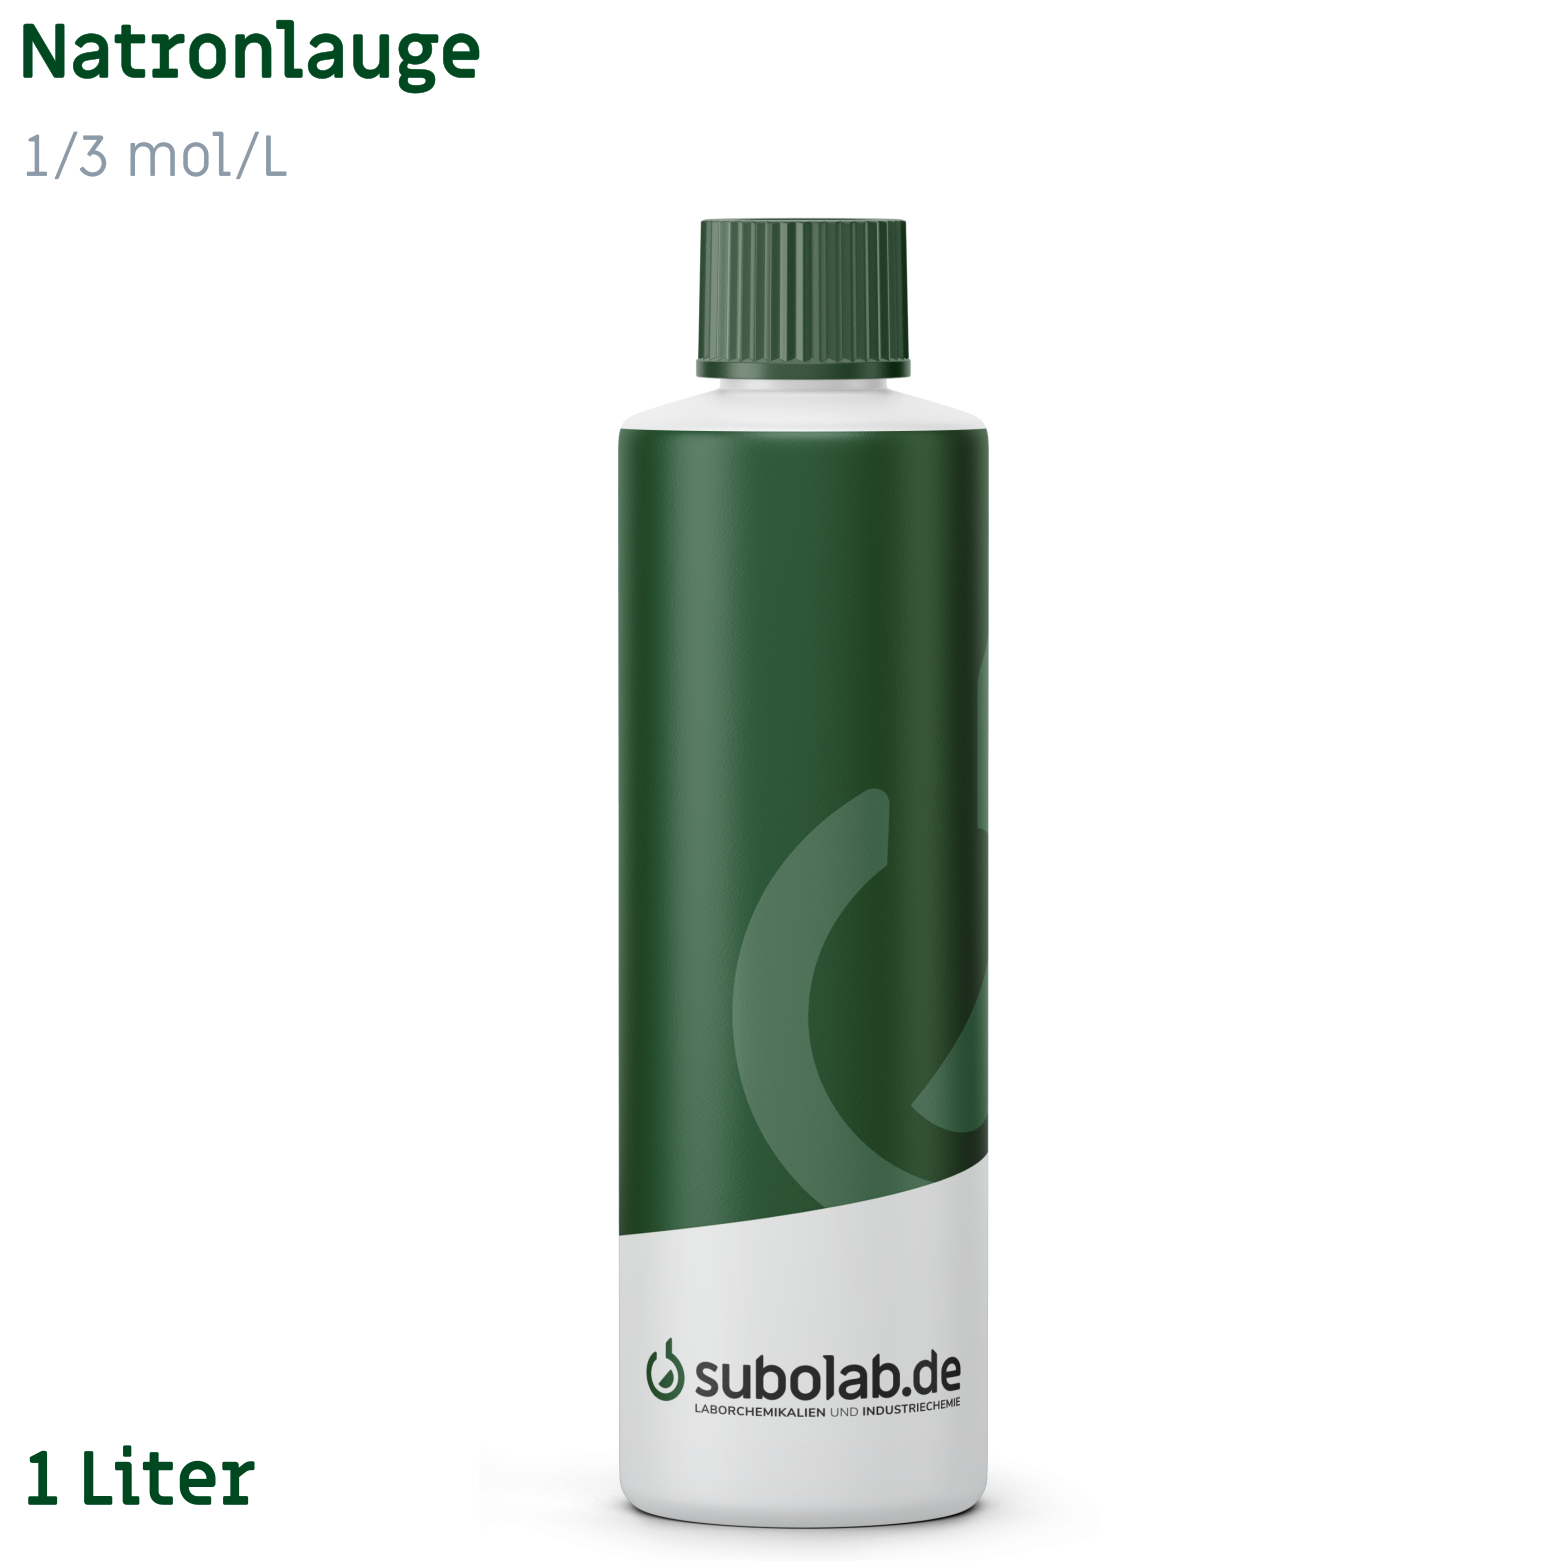 Bild von Natronlauge 1/3 mol/L (1 Liter)